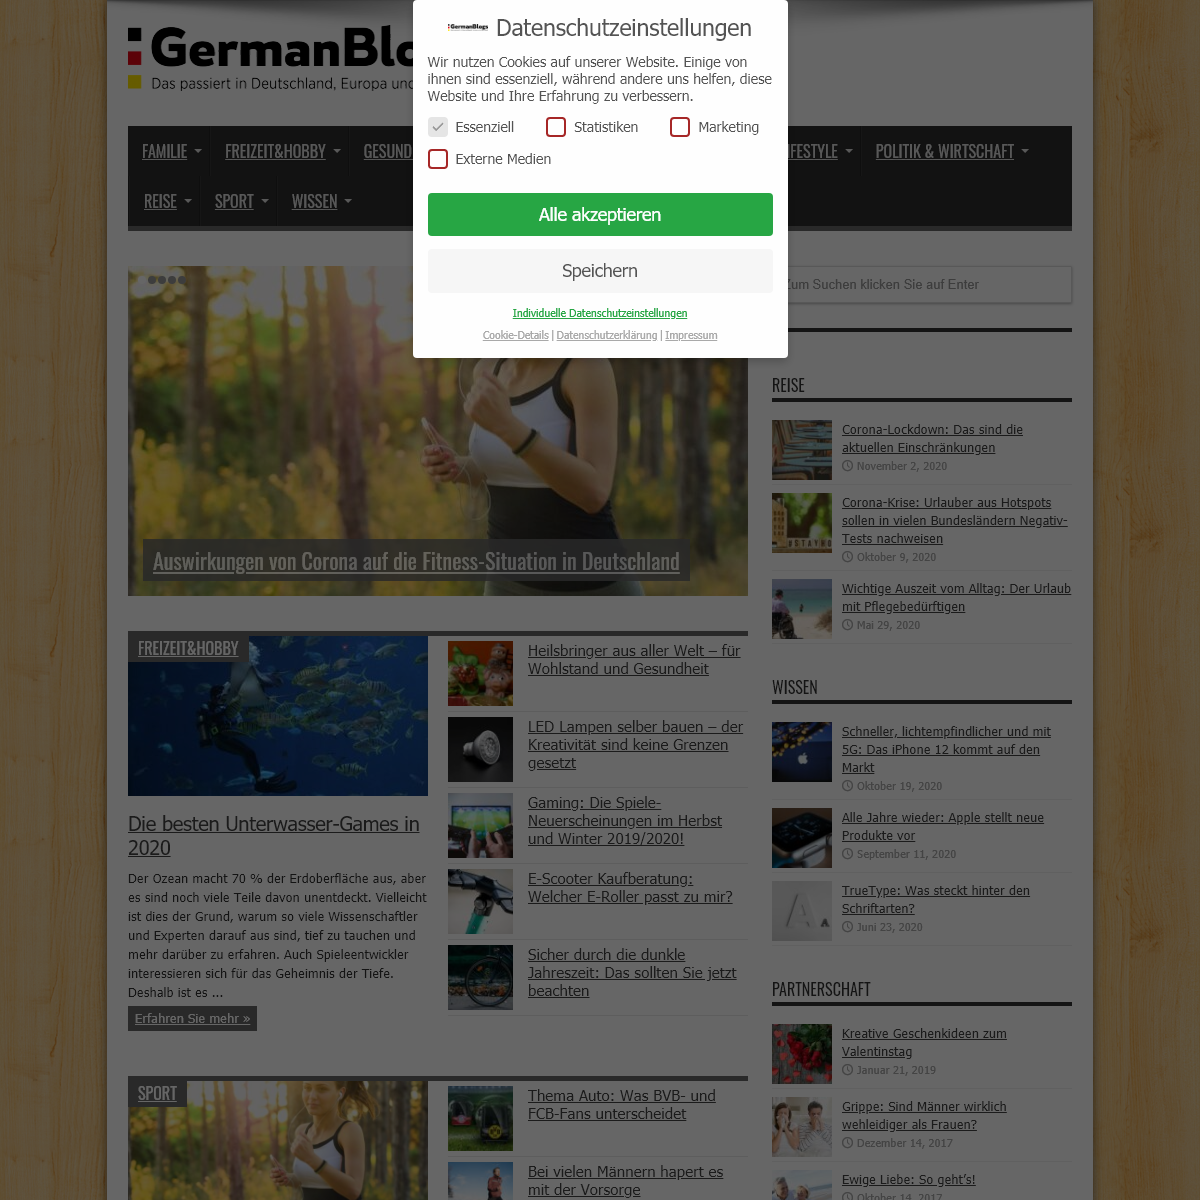 germanblogs.de - Was ist los in Deutschland und der Welt